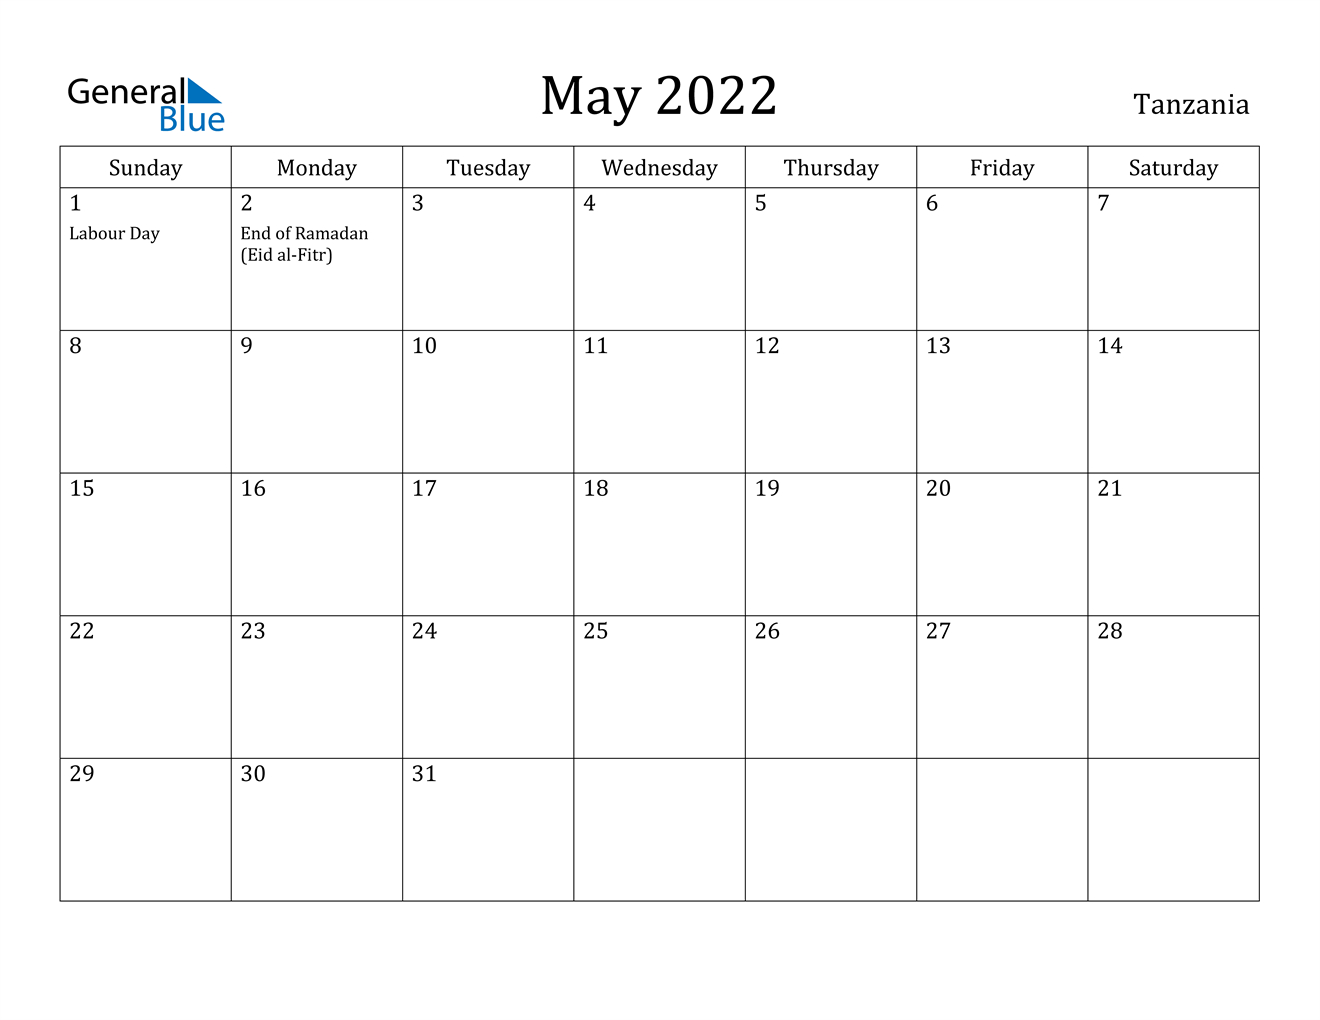 May 2022 Calendar - Tanzania